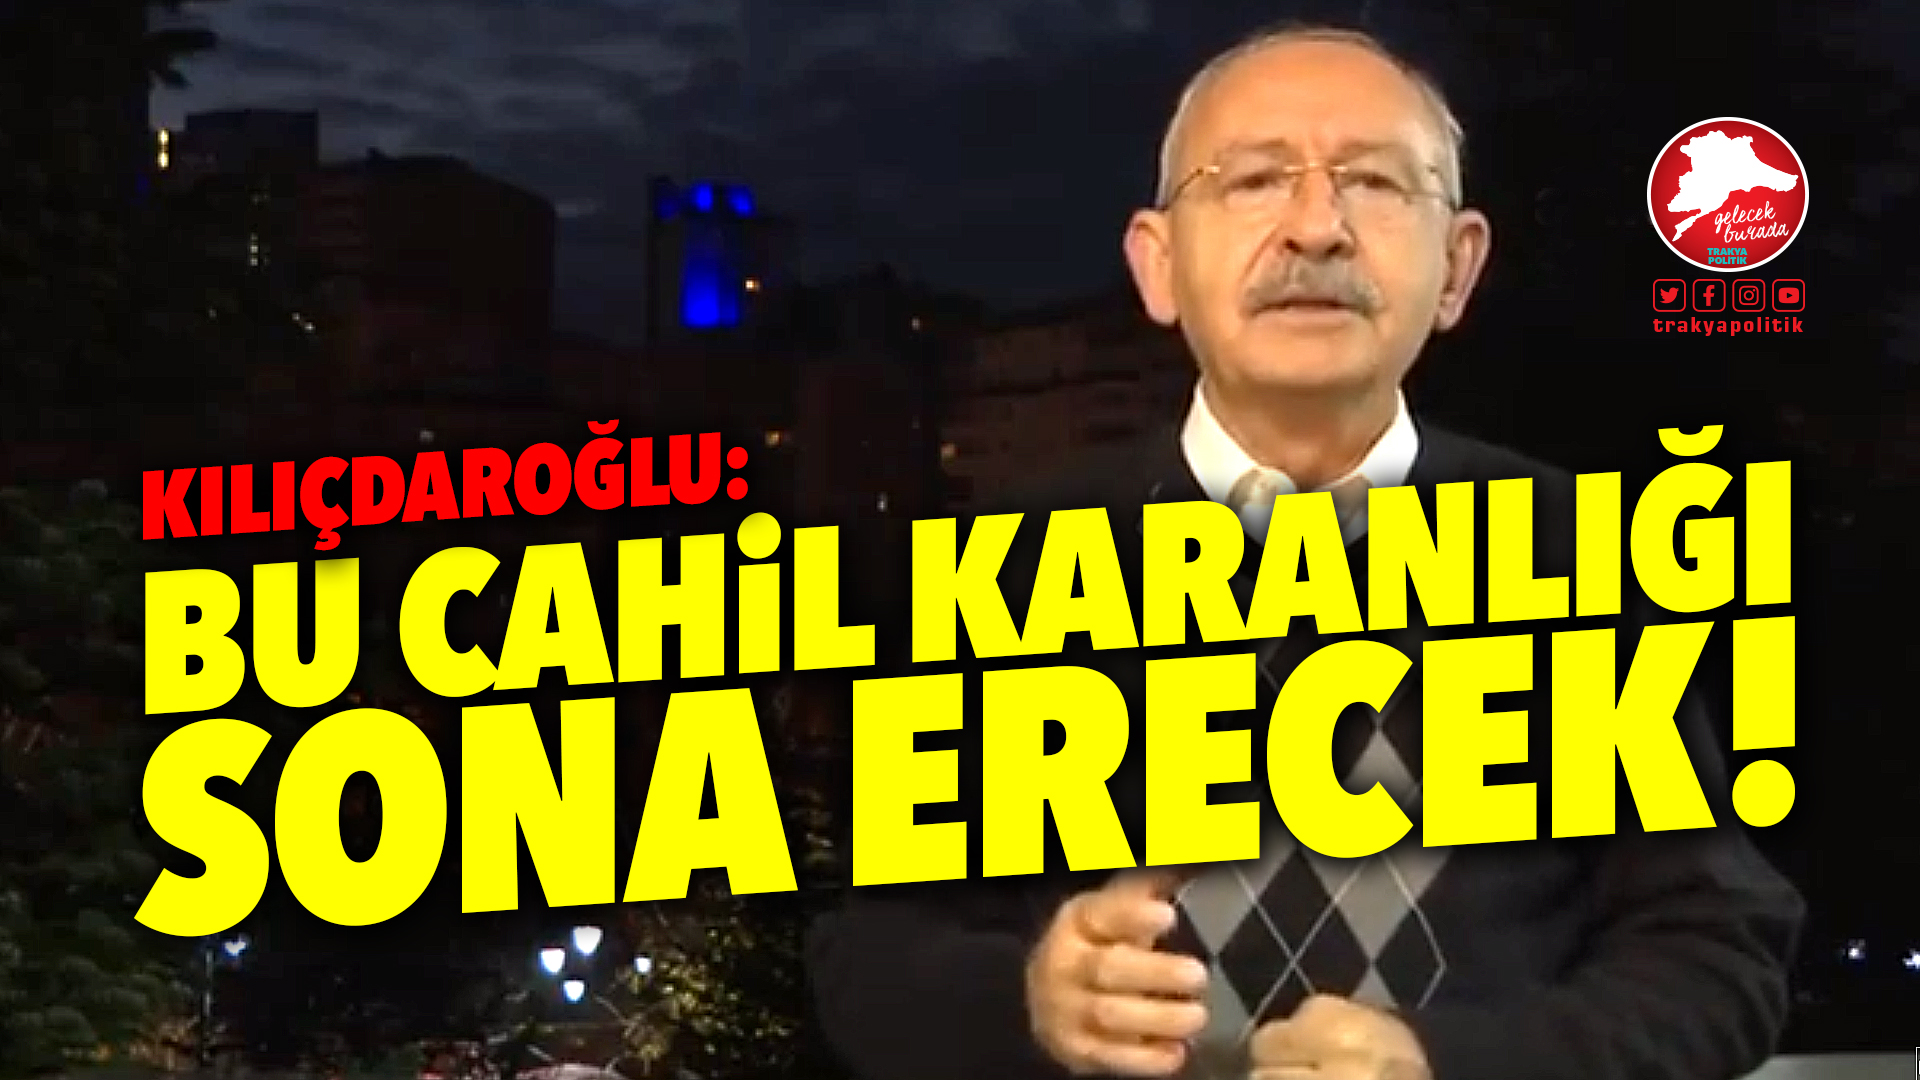 Kılıçdaroğlu: “Türkiye’nin sabahlarını karanlığa boğdular”